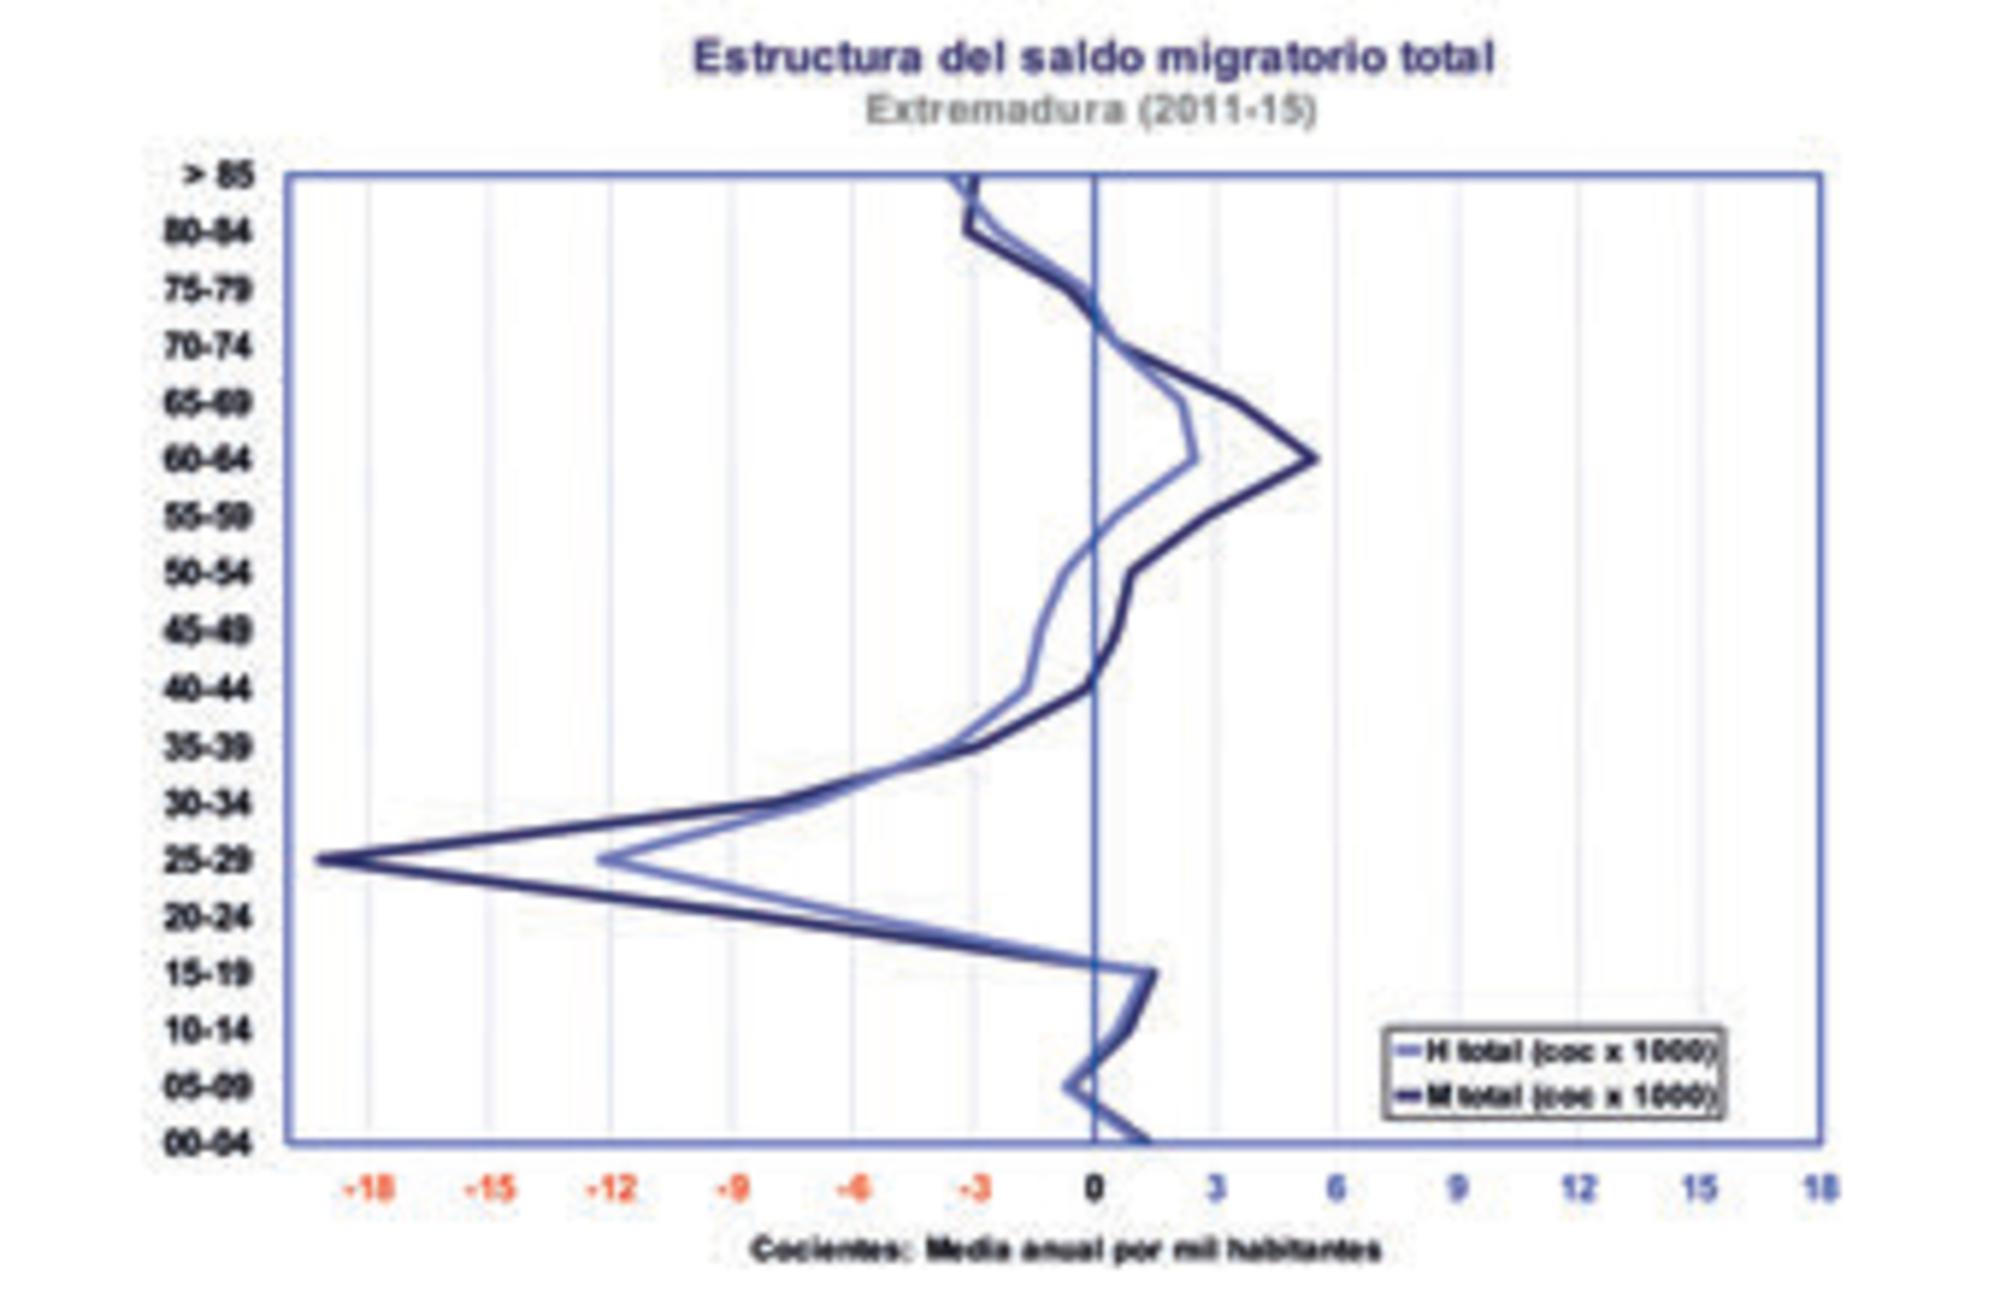 Estructura del saldo migratorio total en Extremadura